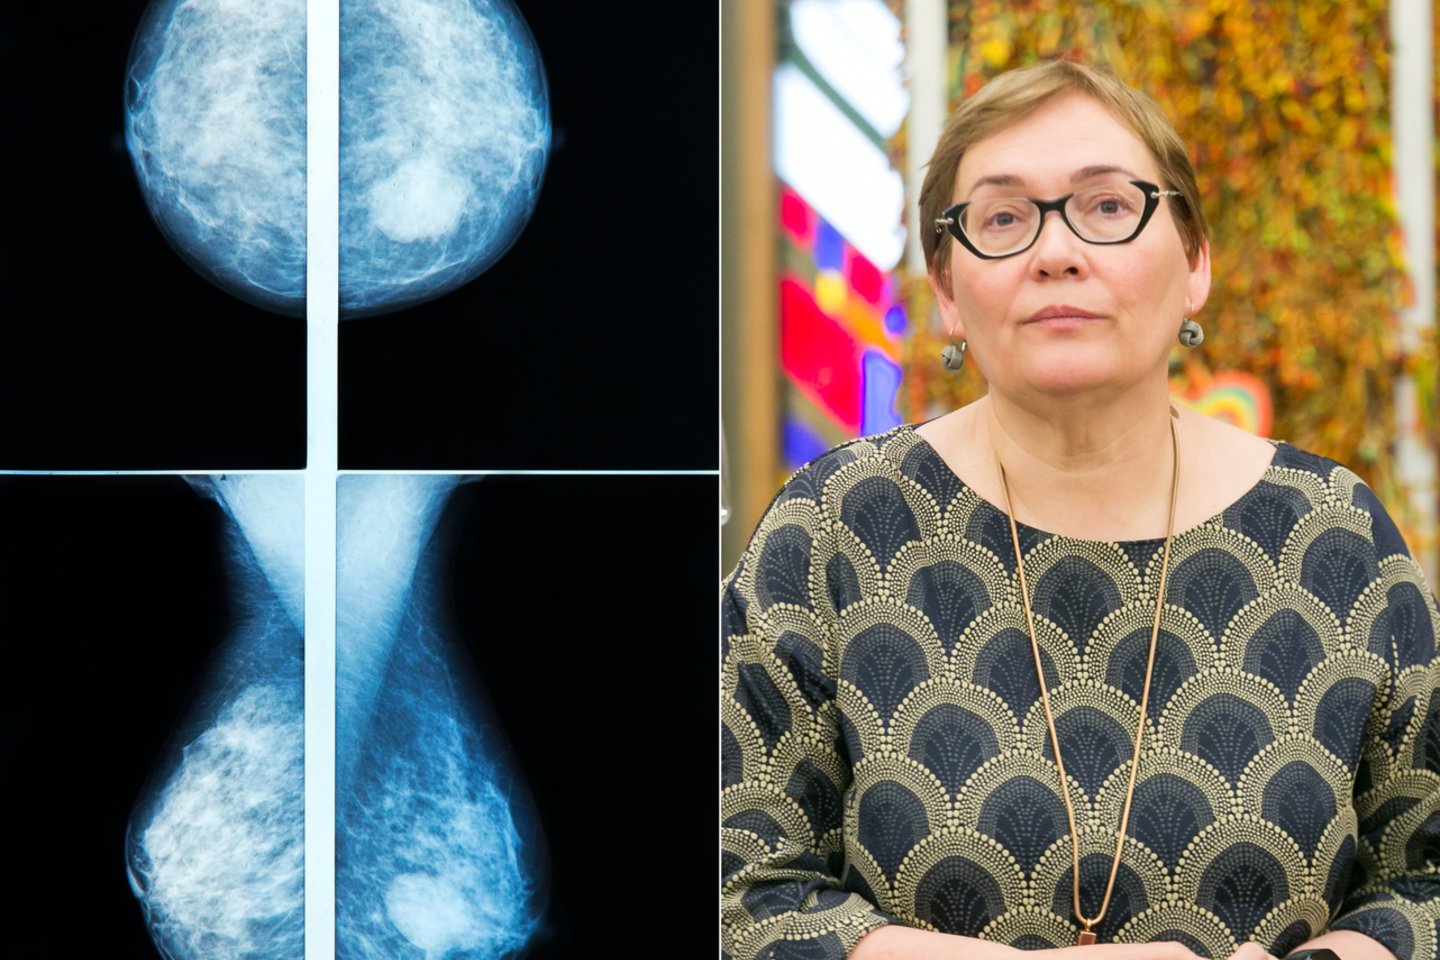 Skelbiama, kad A.Maldeikienei nustatytas antrosios stadijos krūties vėžys. <br> 123rf ir T.Bautro nuotr.